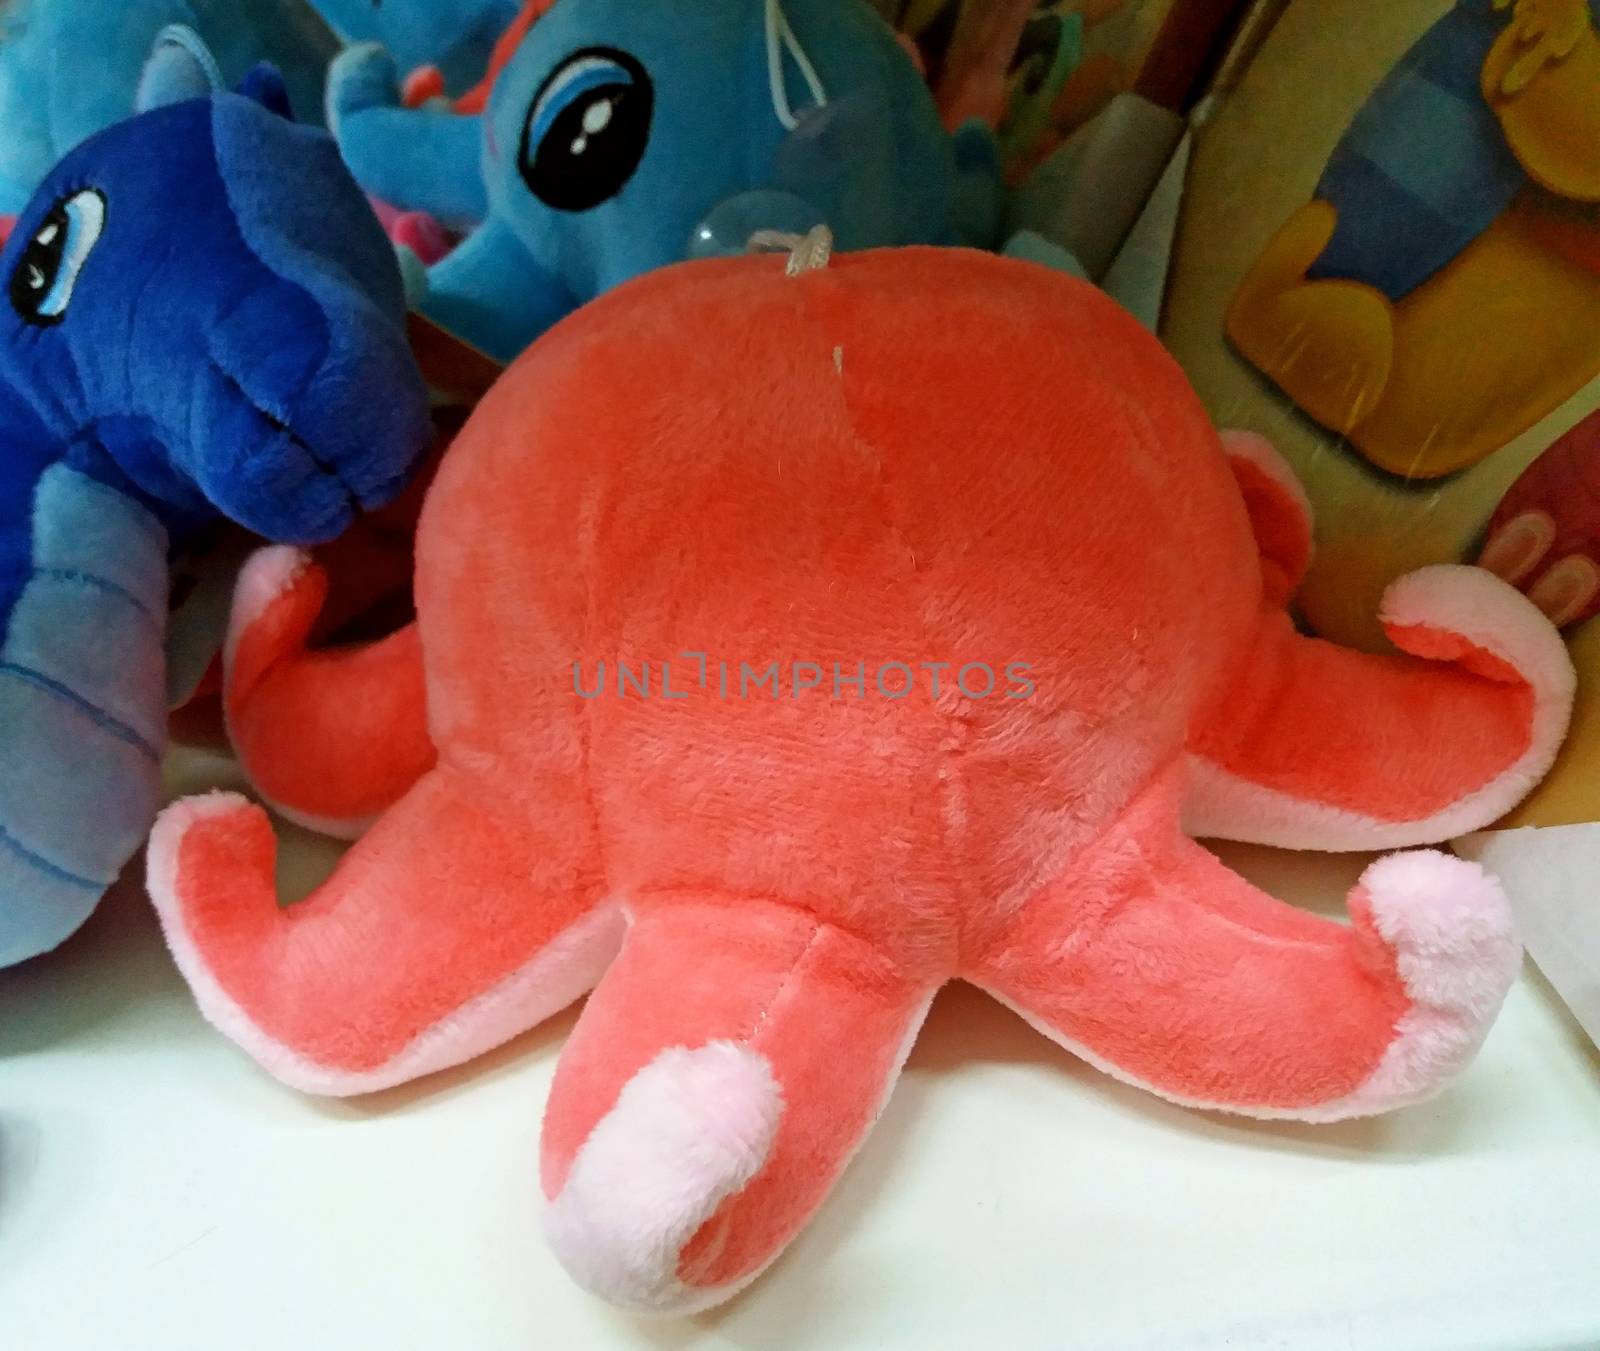 Octopus plush toy souvenir from Greece, mediteranean souvenir